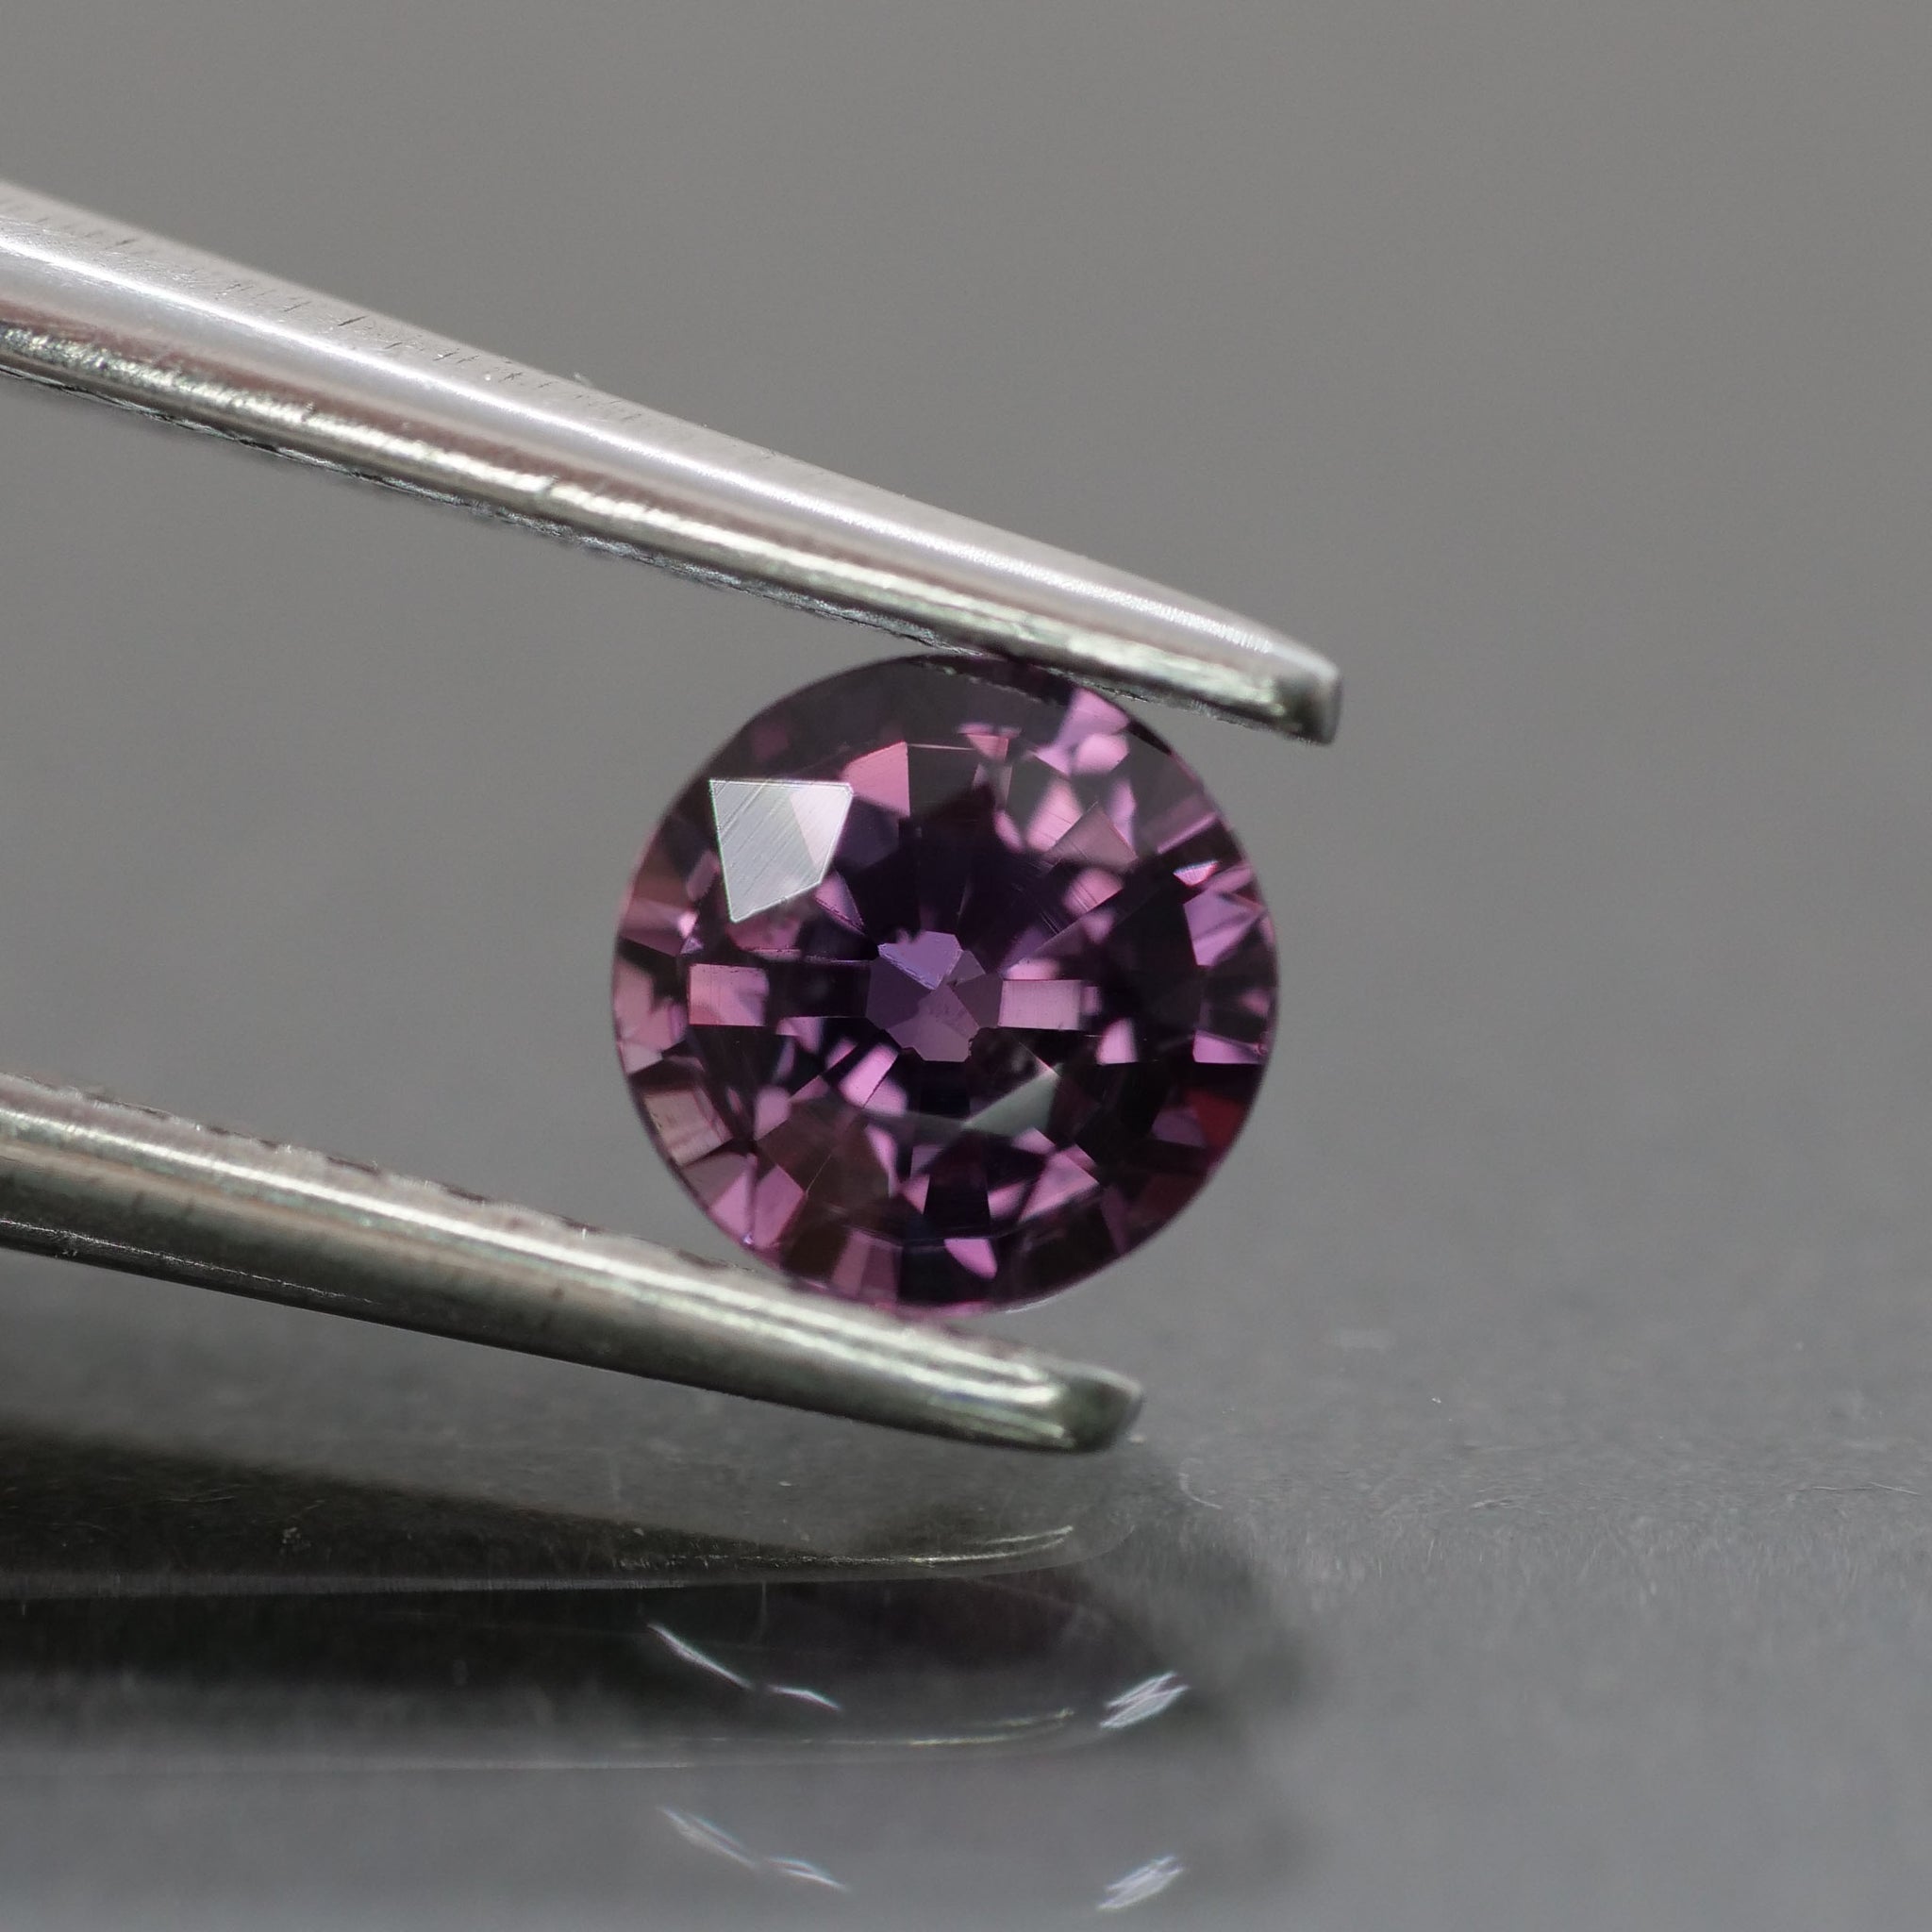 Sapphire | natural, purple, round cut 4.5 mm, 0.46 ct - Eden Garden Jewelry™